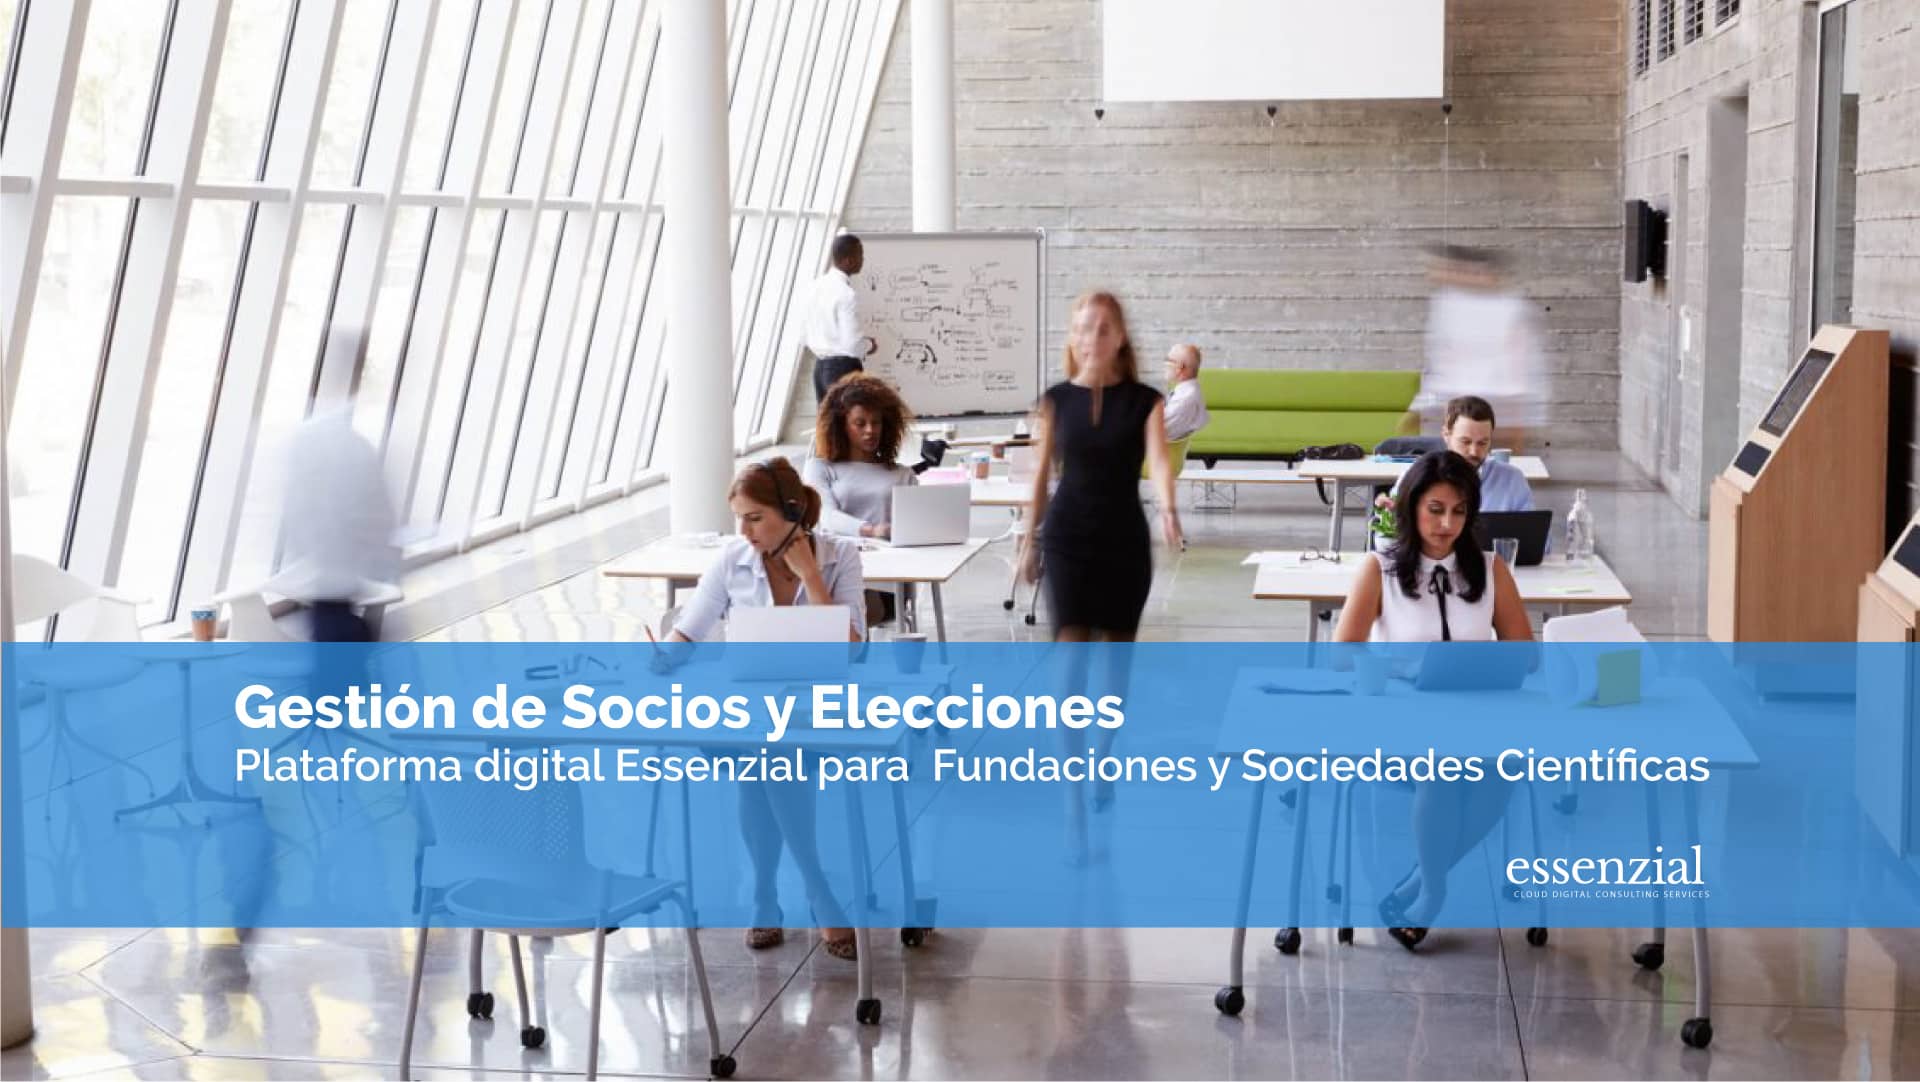 Essenzial-video-Plataforma-Fundaciones-gestion-de-socios-y-elecciones2